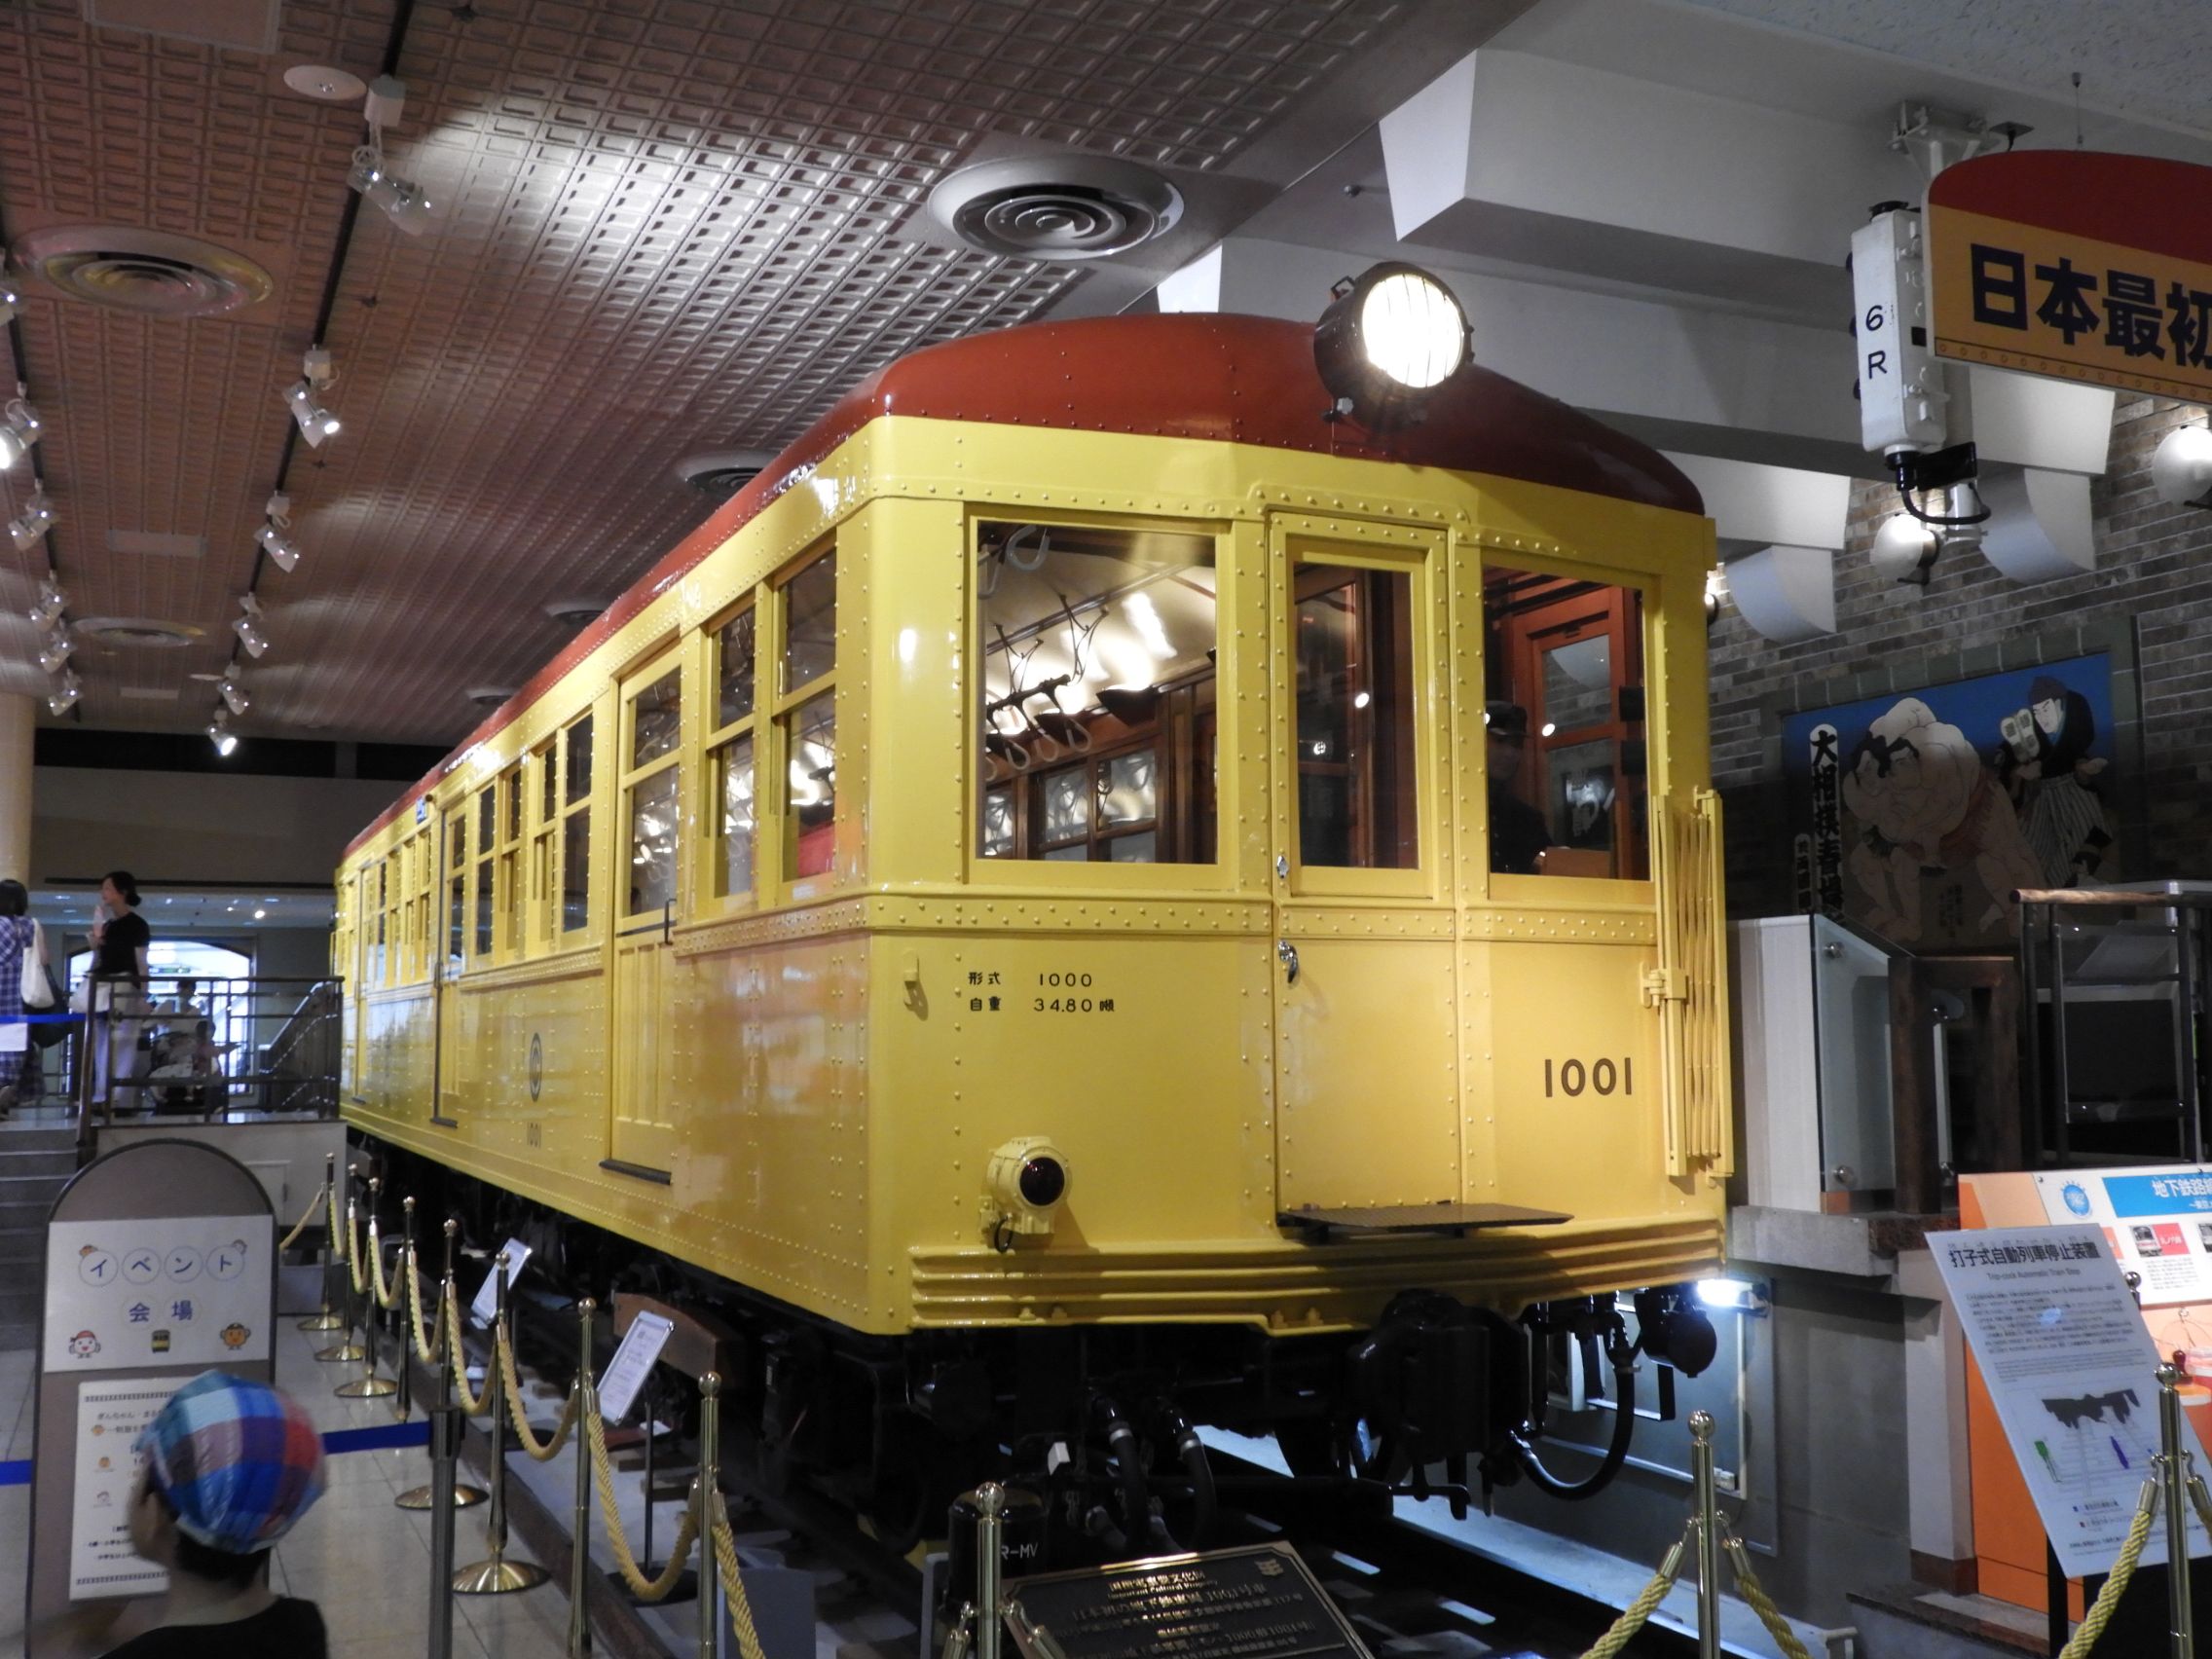 地下鉄博物館の保存車両 東京地下鉄道1001号車 わさびくま日記 楽天ブログ